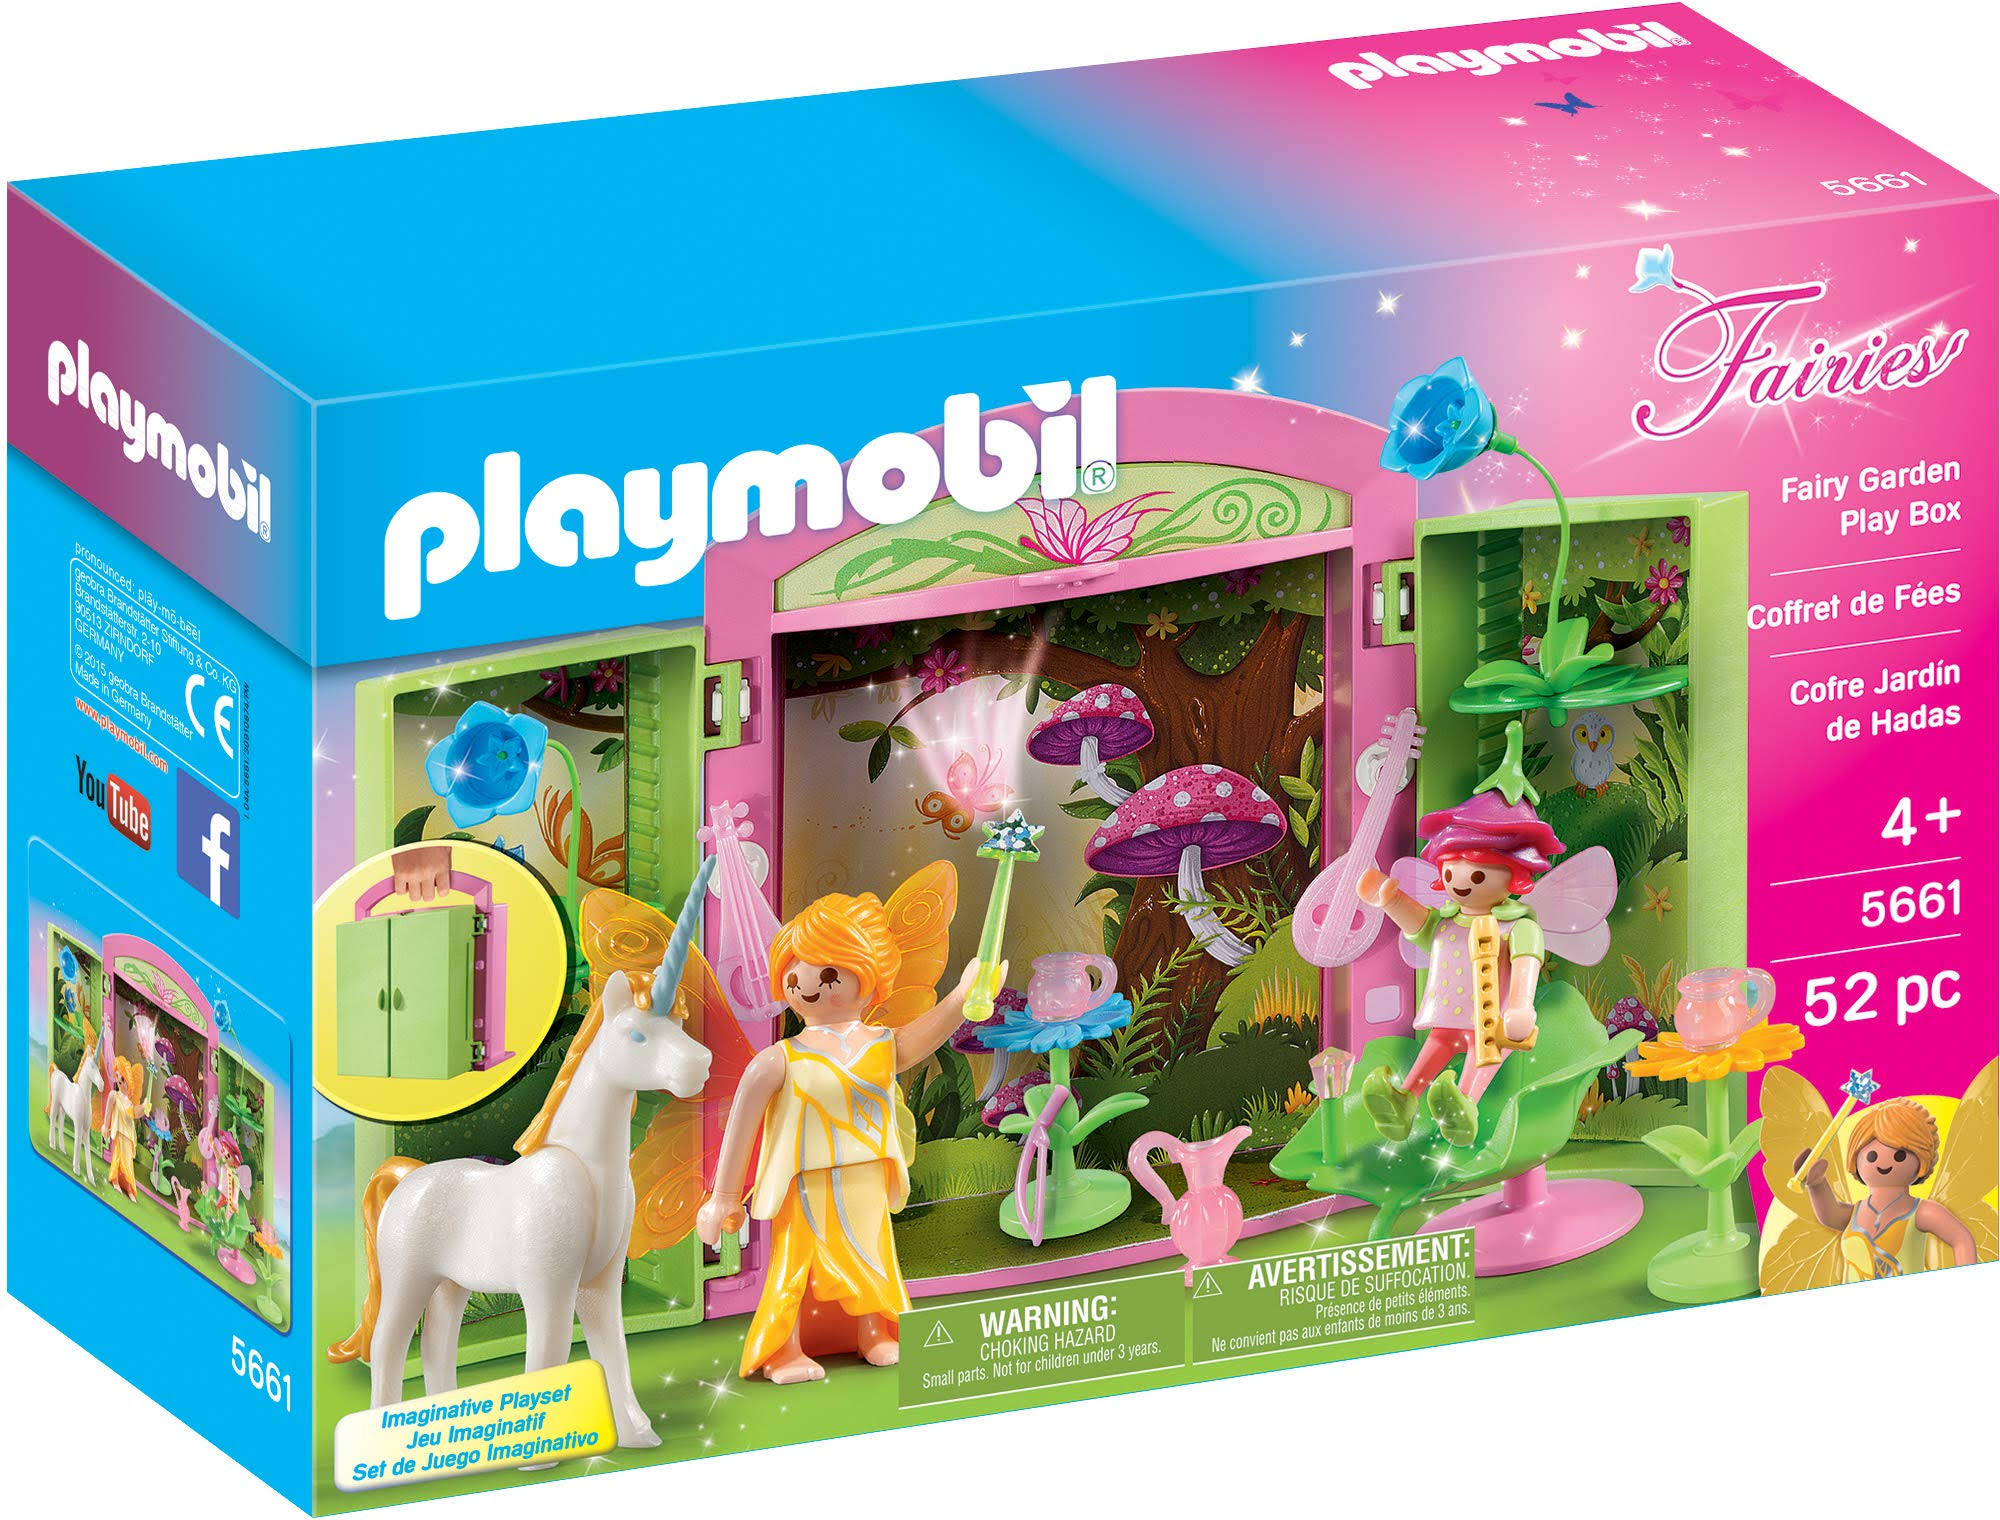 Playmobil Fairies Playset - Fairy Garden Play Box